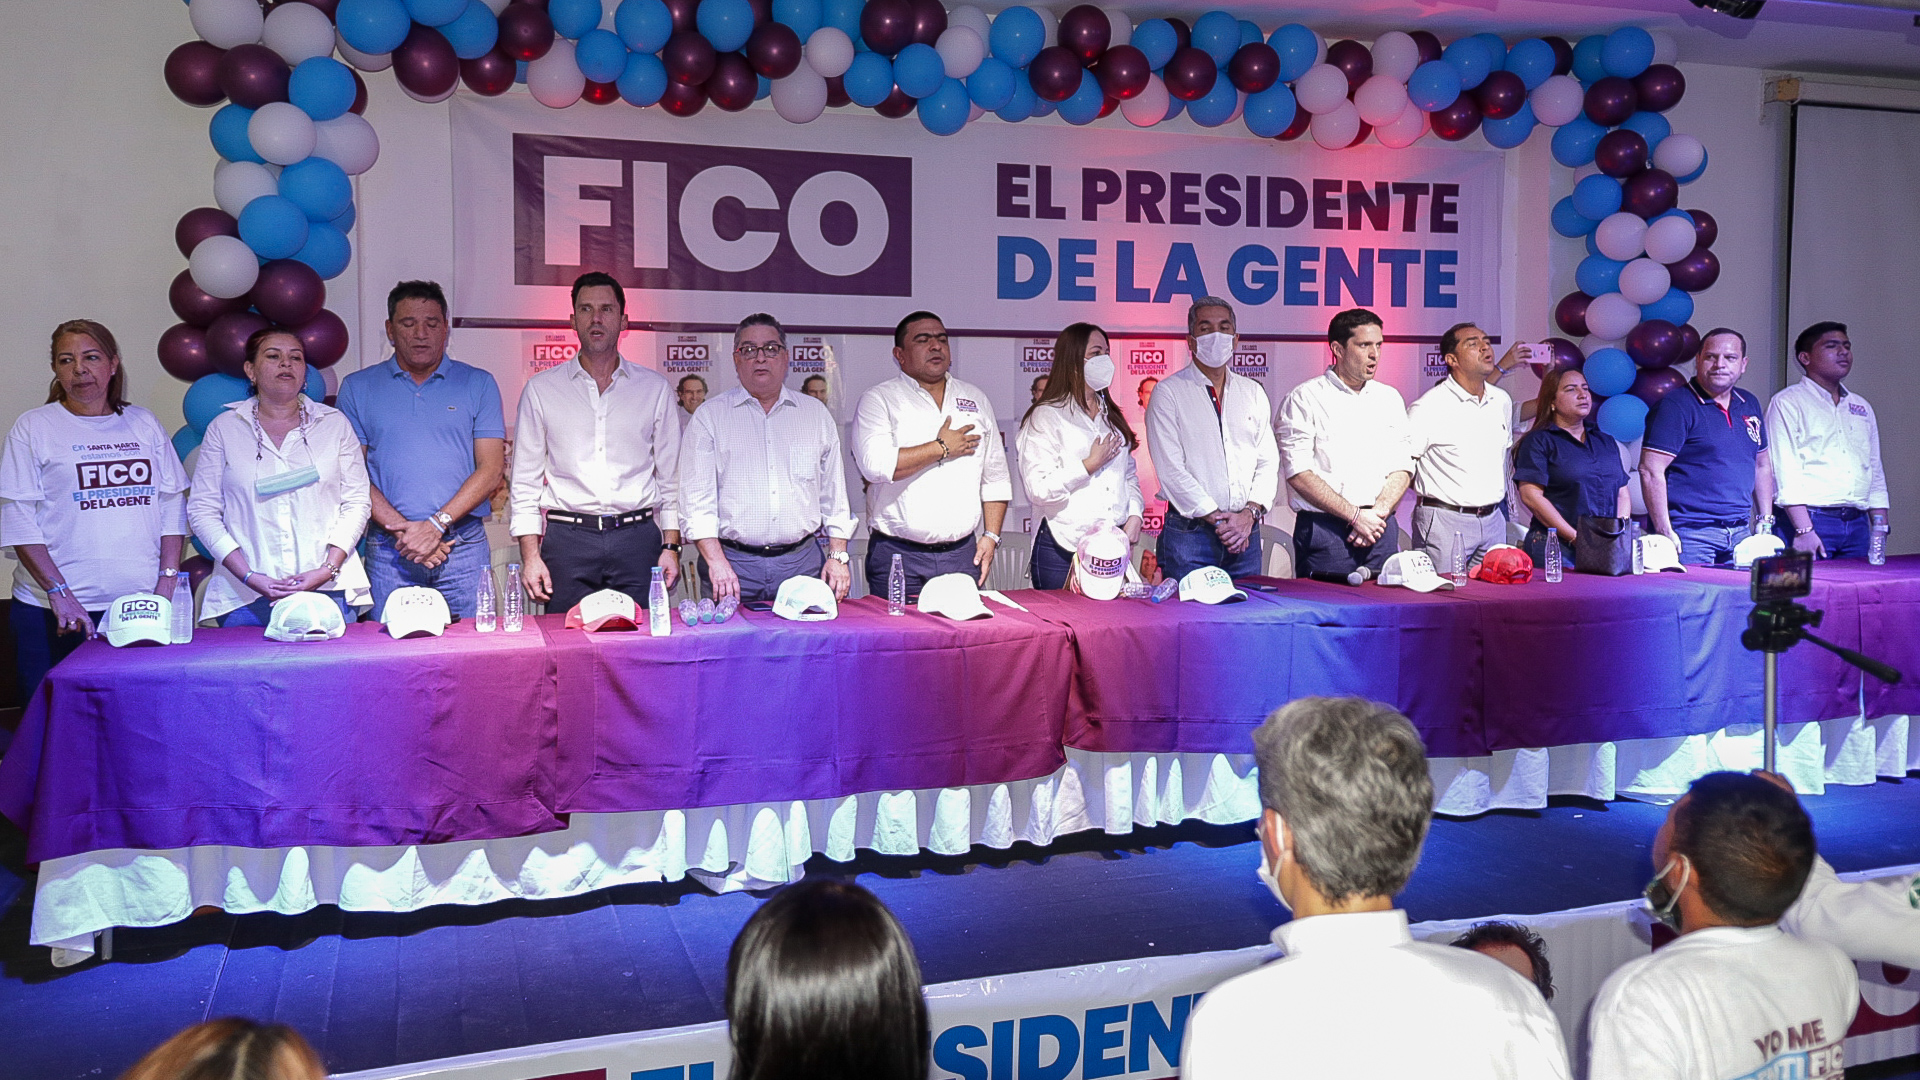 <strong>“Fico es el que mejores propuestas ofrece para Santa Marta y Magdalena”: Congresistas</strong>